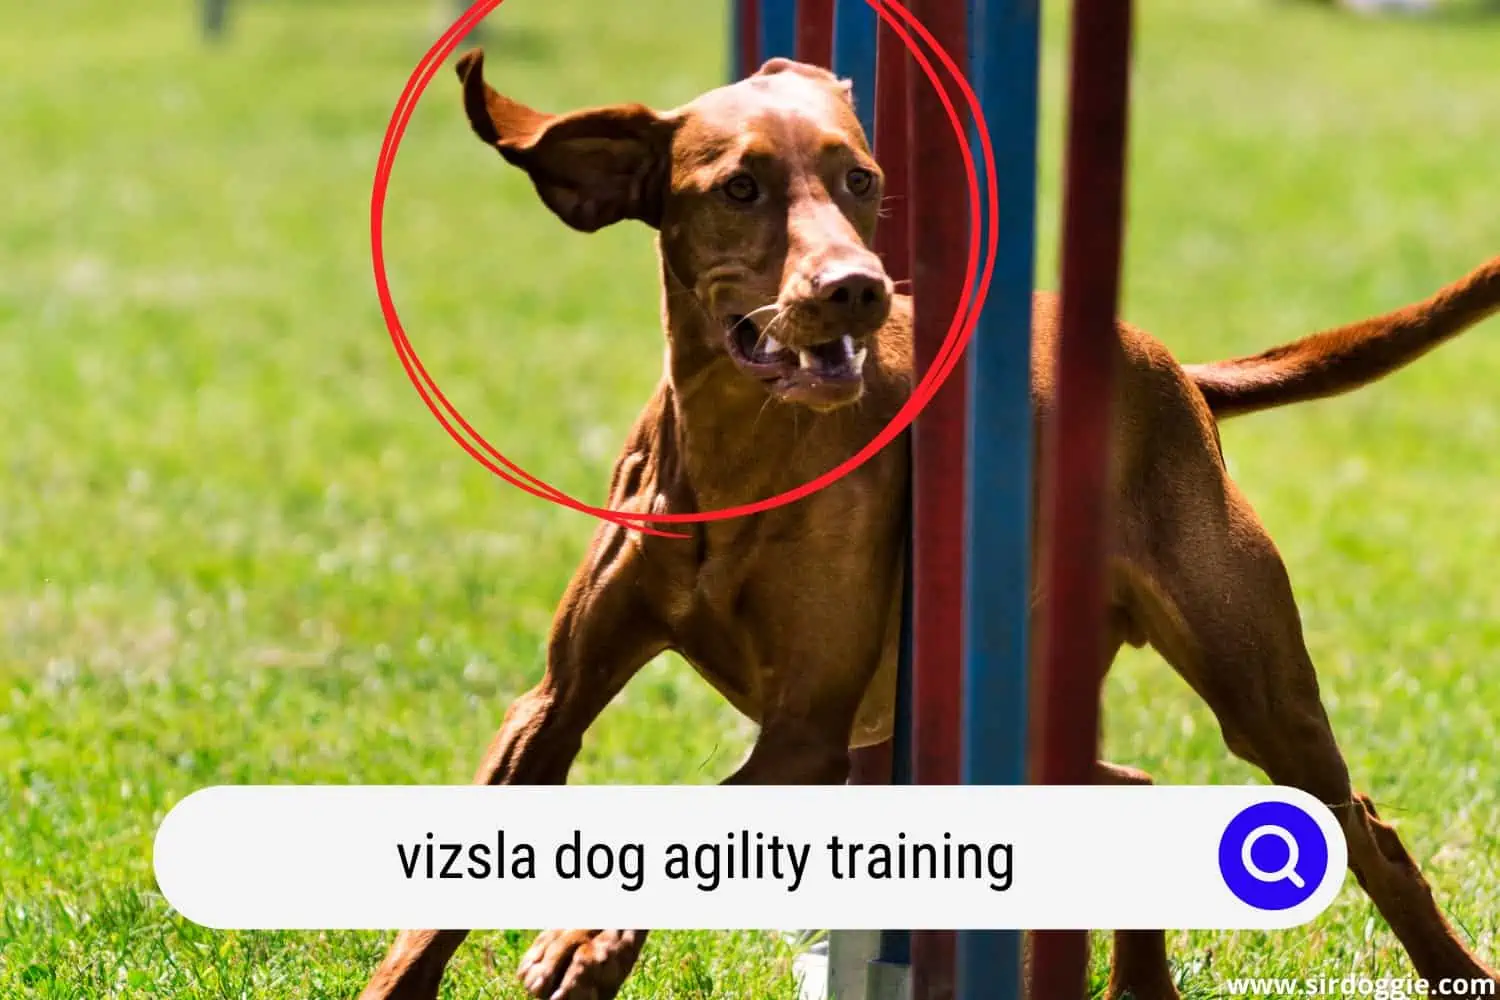 Vizsla dog undergoing agility training